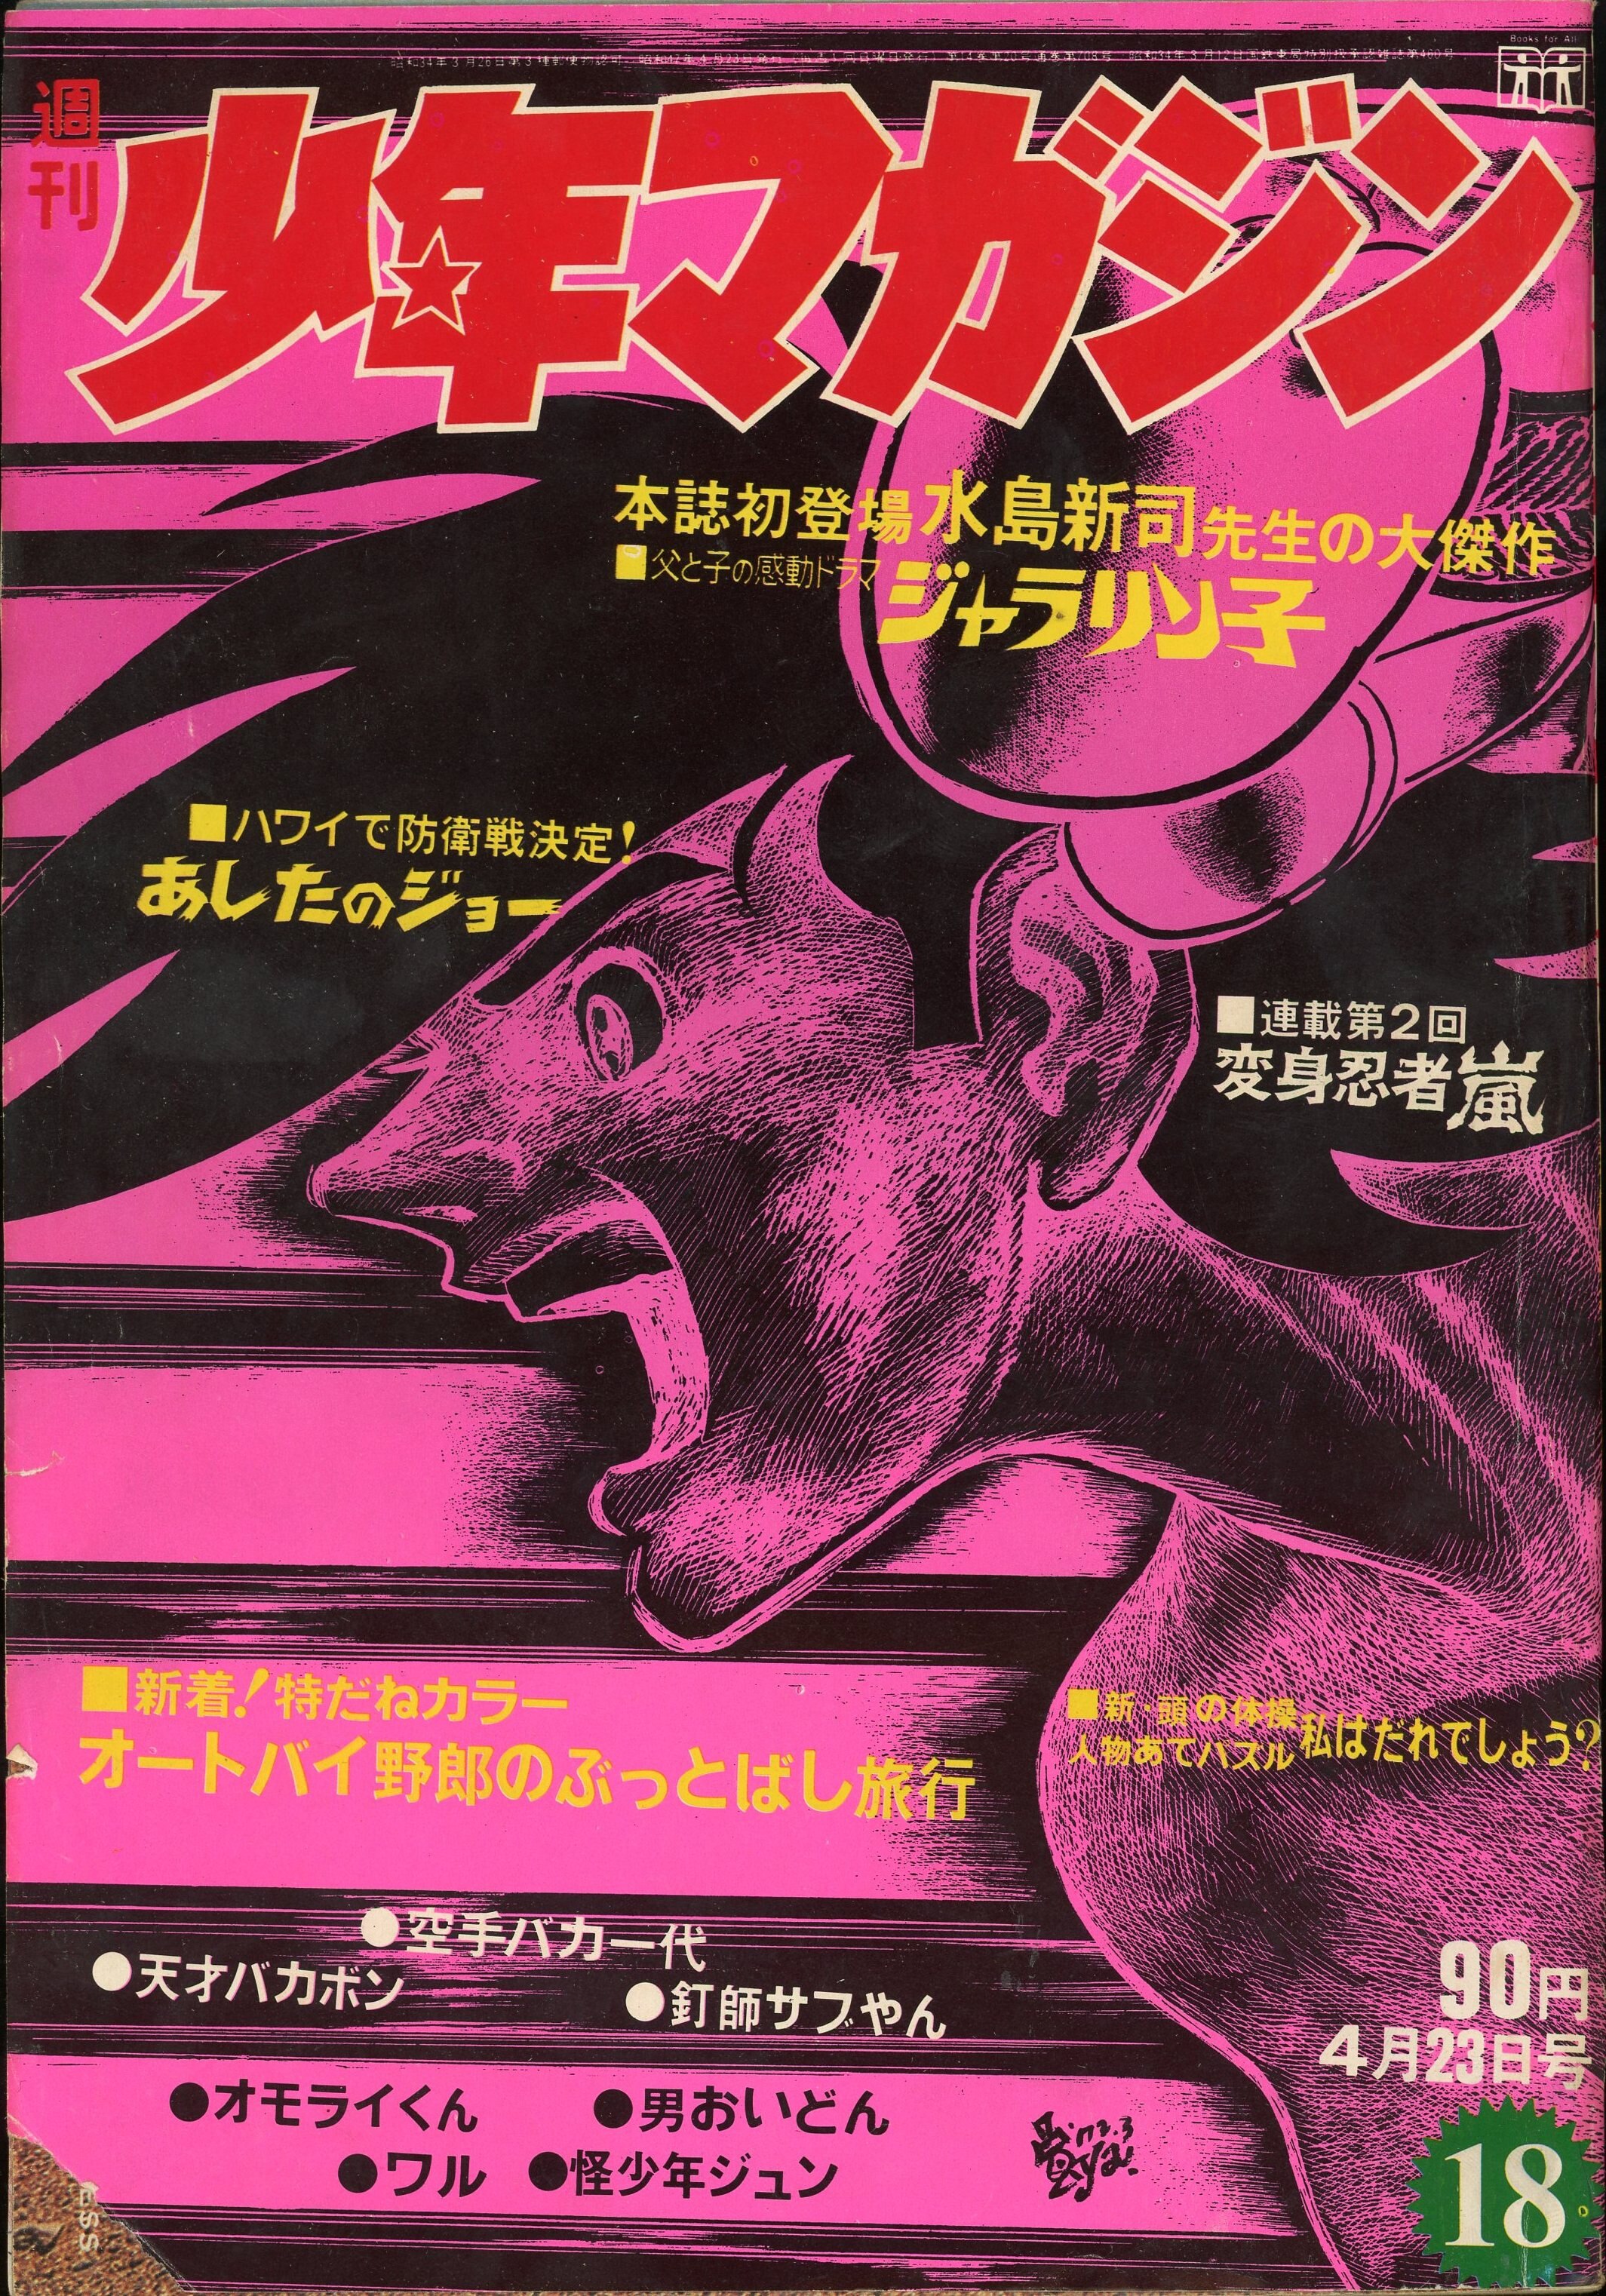 講談社 1972年(昭和47年)の漫画雑誌 週刊少年マガジン1972年(昭和47年)18 7218 | ありある | まんだらけ MANDARAKE